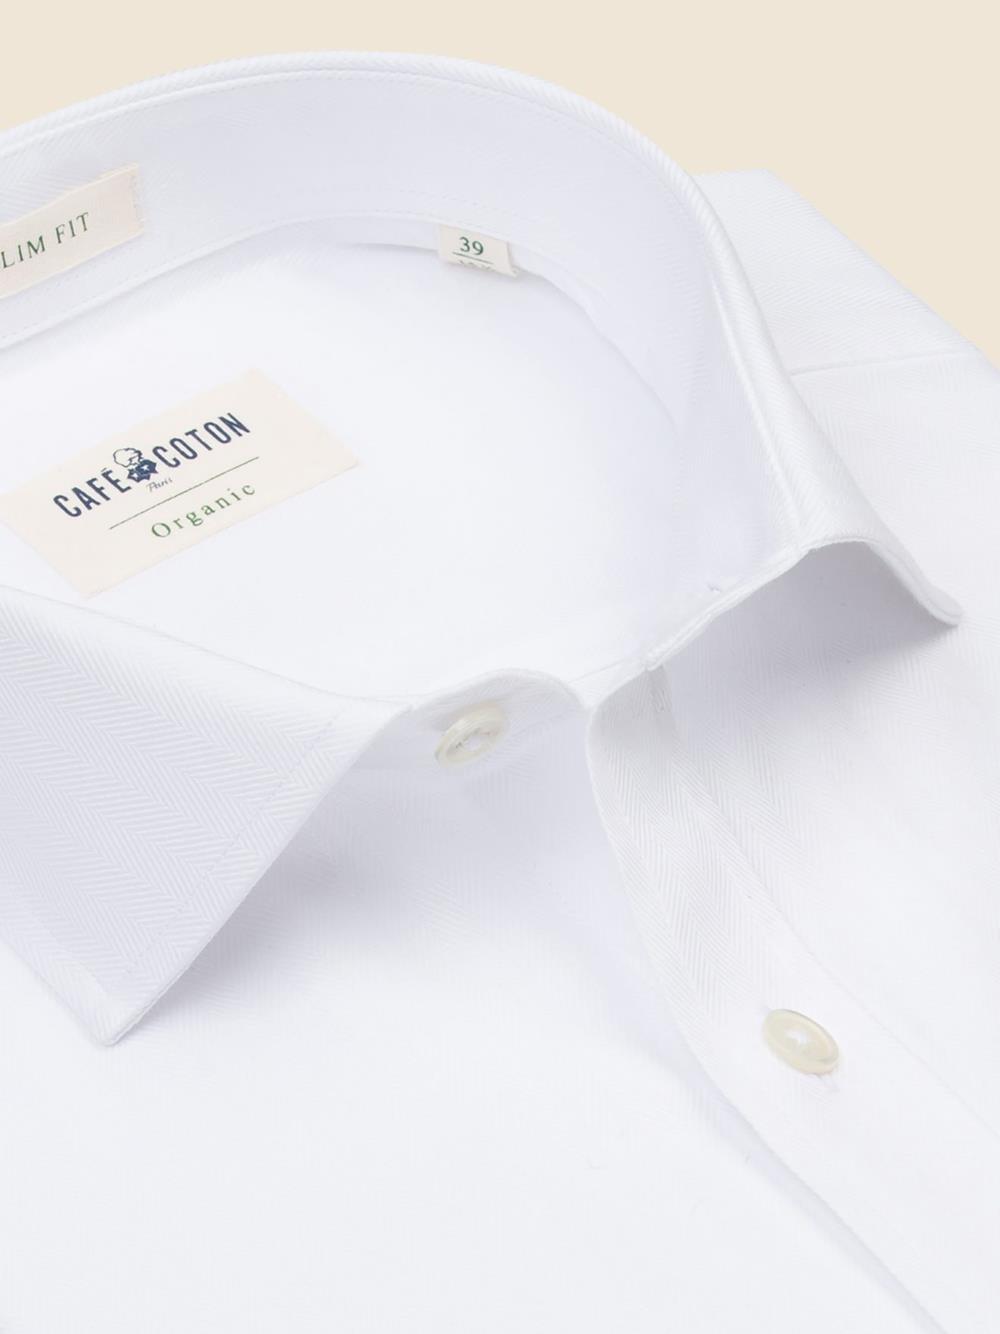 White chevron shirt